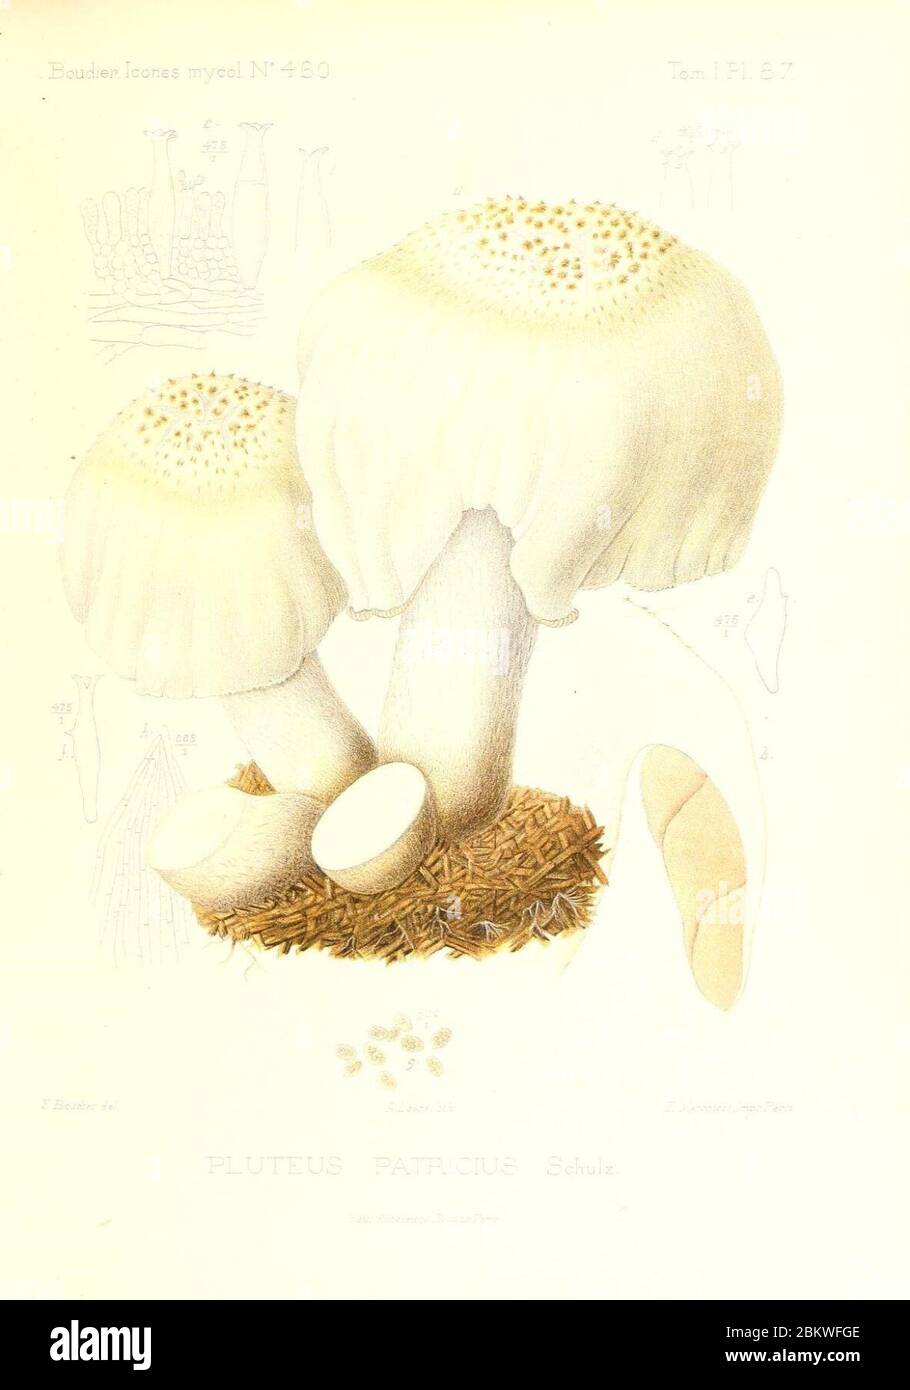 Icones mycologicæ, ou Iconographie des champignons de France principalement Discomycetes (Pl. 87) (9801019506). Stock Photo